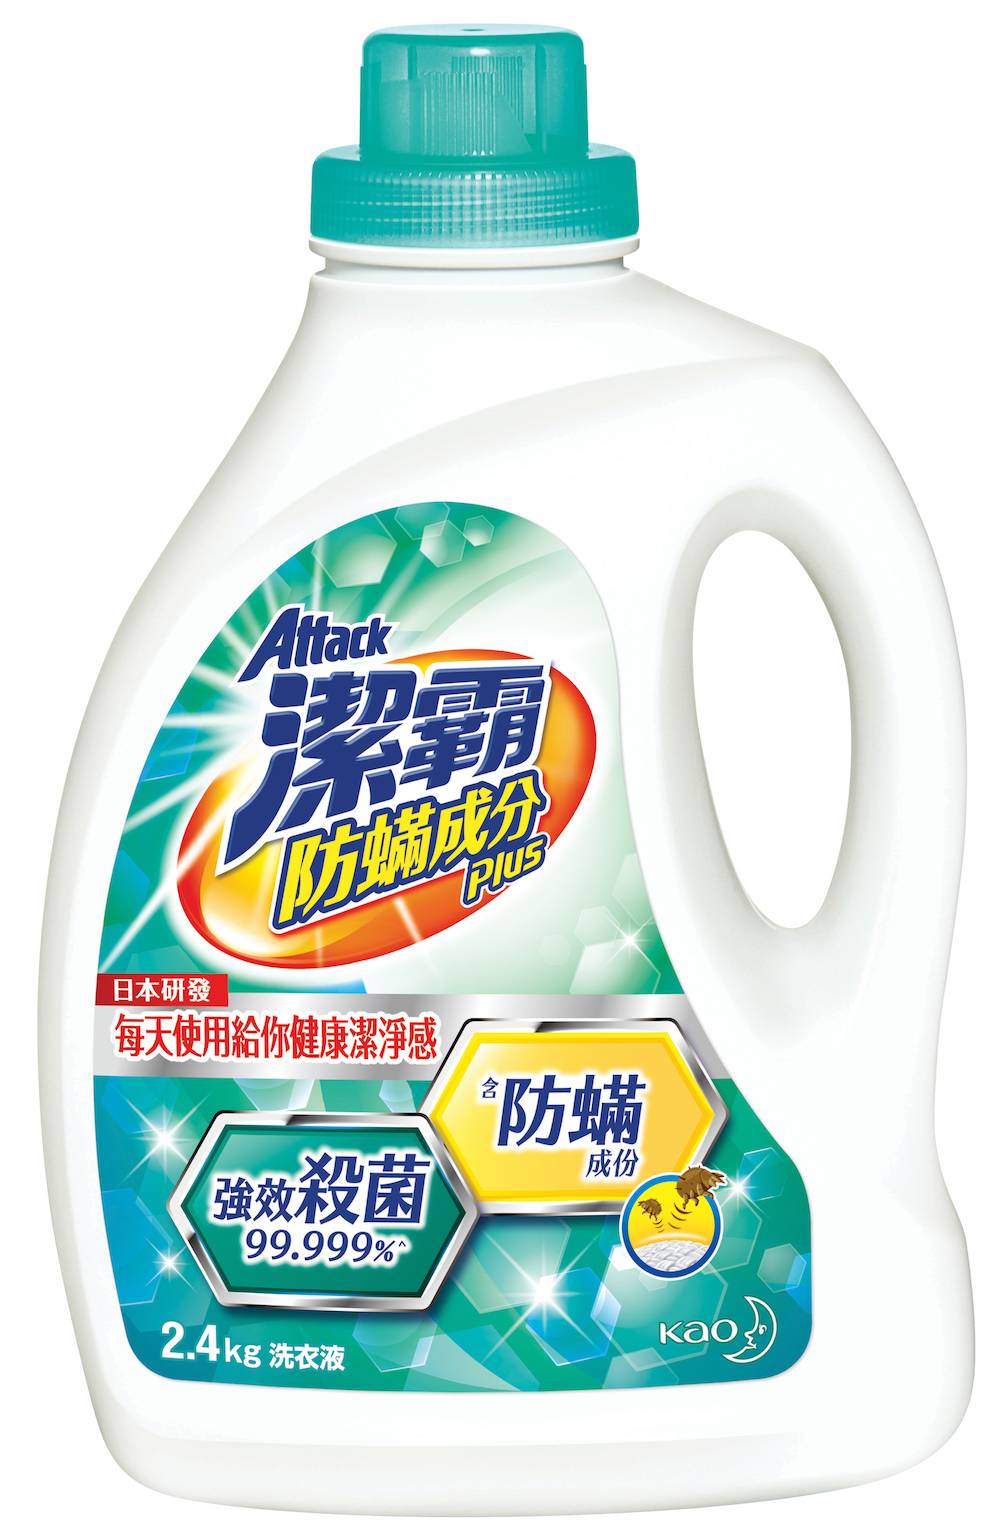 家居清潔 潔霸防蟎成分Plus洗衣液強效殺菌99.999%，更獨有MDJ防蟎成分，不用再擔心因致敏原「蟎」而引起的各種問題。